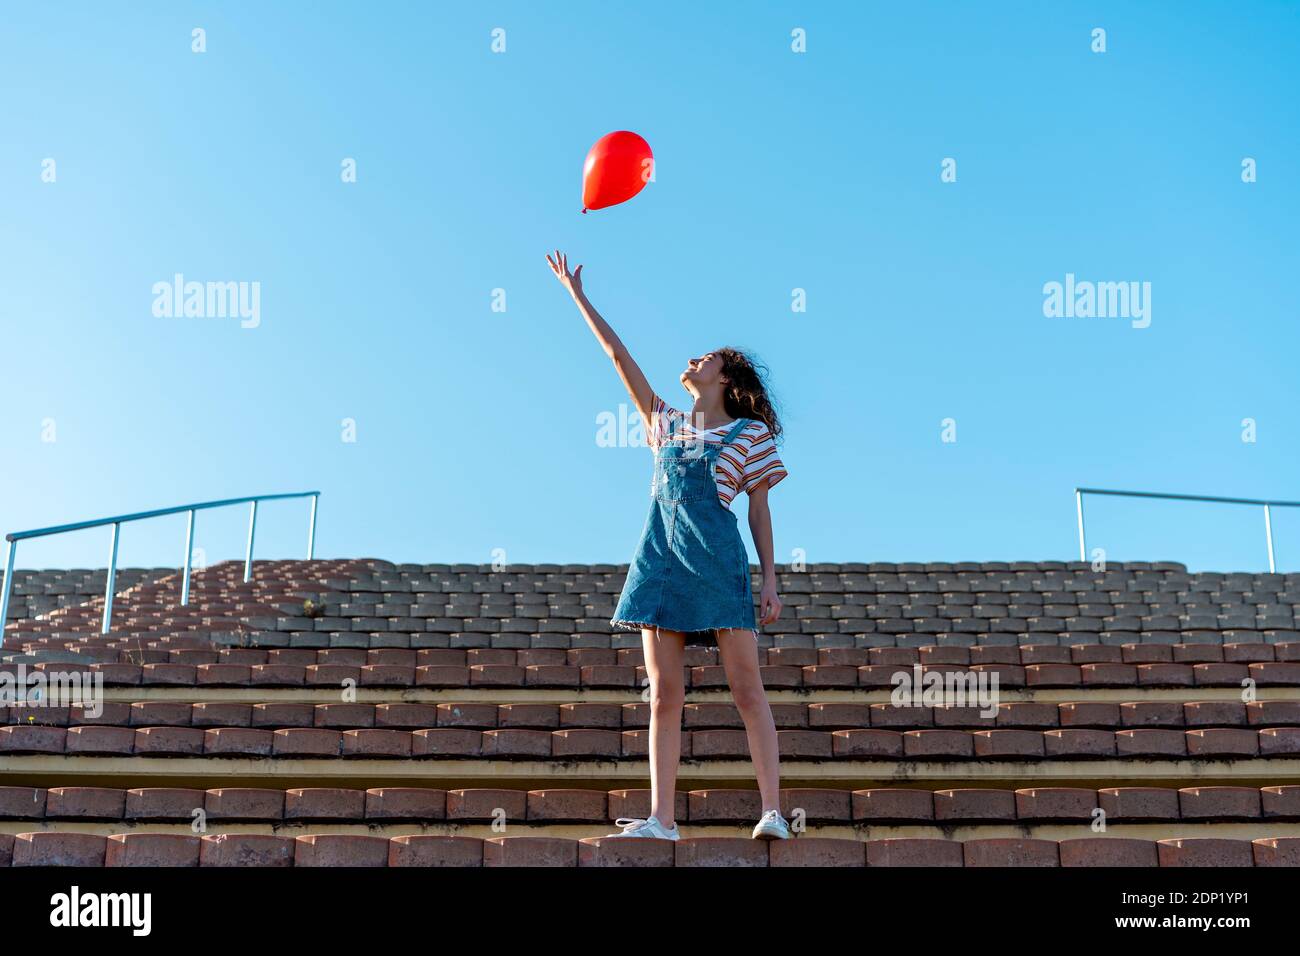 Junge Frau steht auf Tribünen, Loslassen von einem roten Ballon Stockfoto